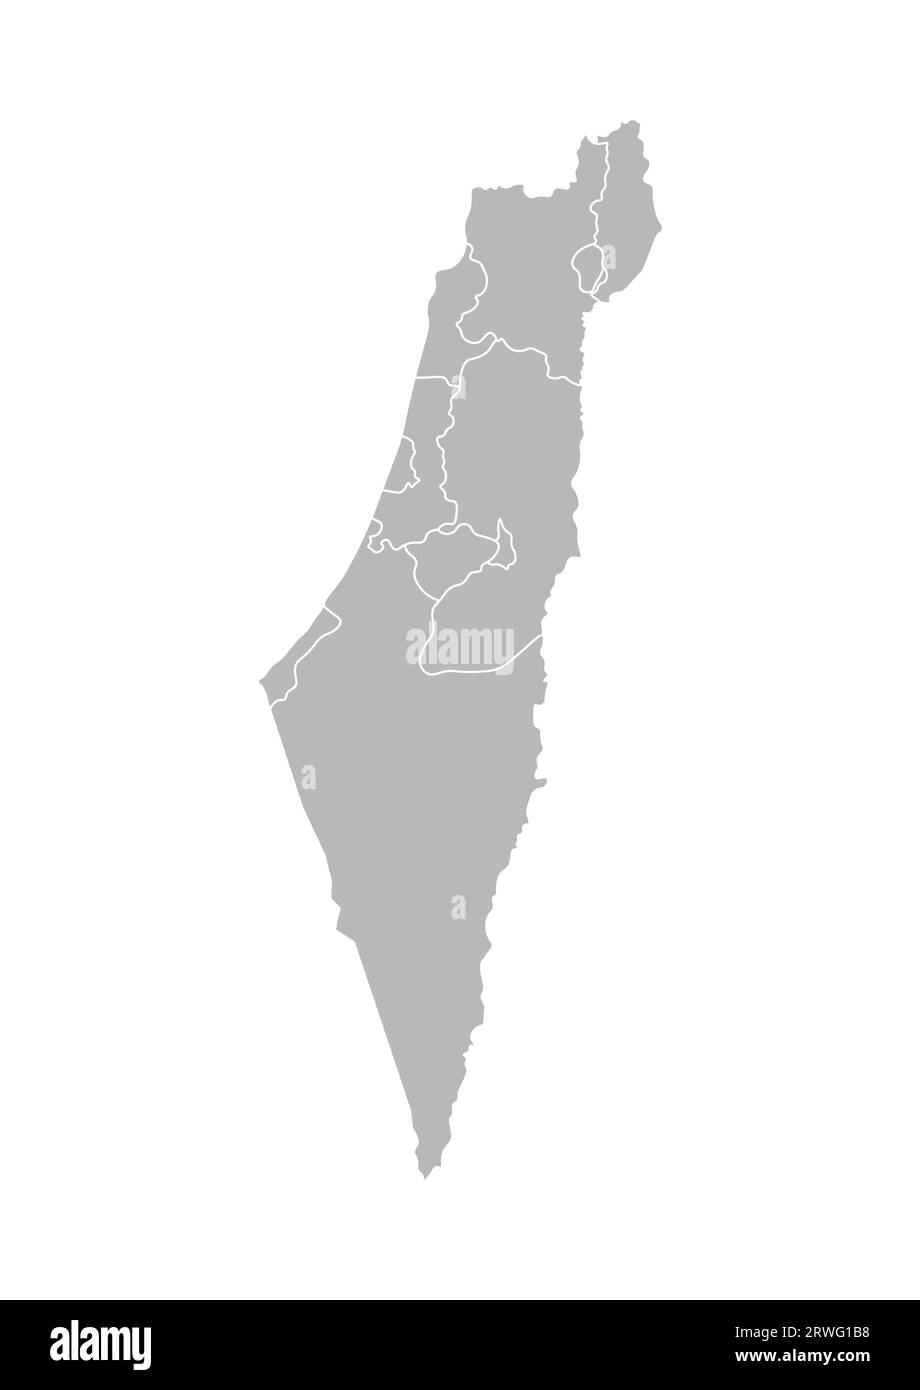 Illustrazione vettoriale isolata della mappa amministrativa semplificata di Israele. Confini dei distretti (regioni). Silhouette grigie. Contorno bianco. Illustrazione Vettoriale